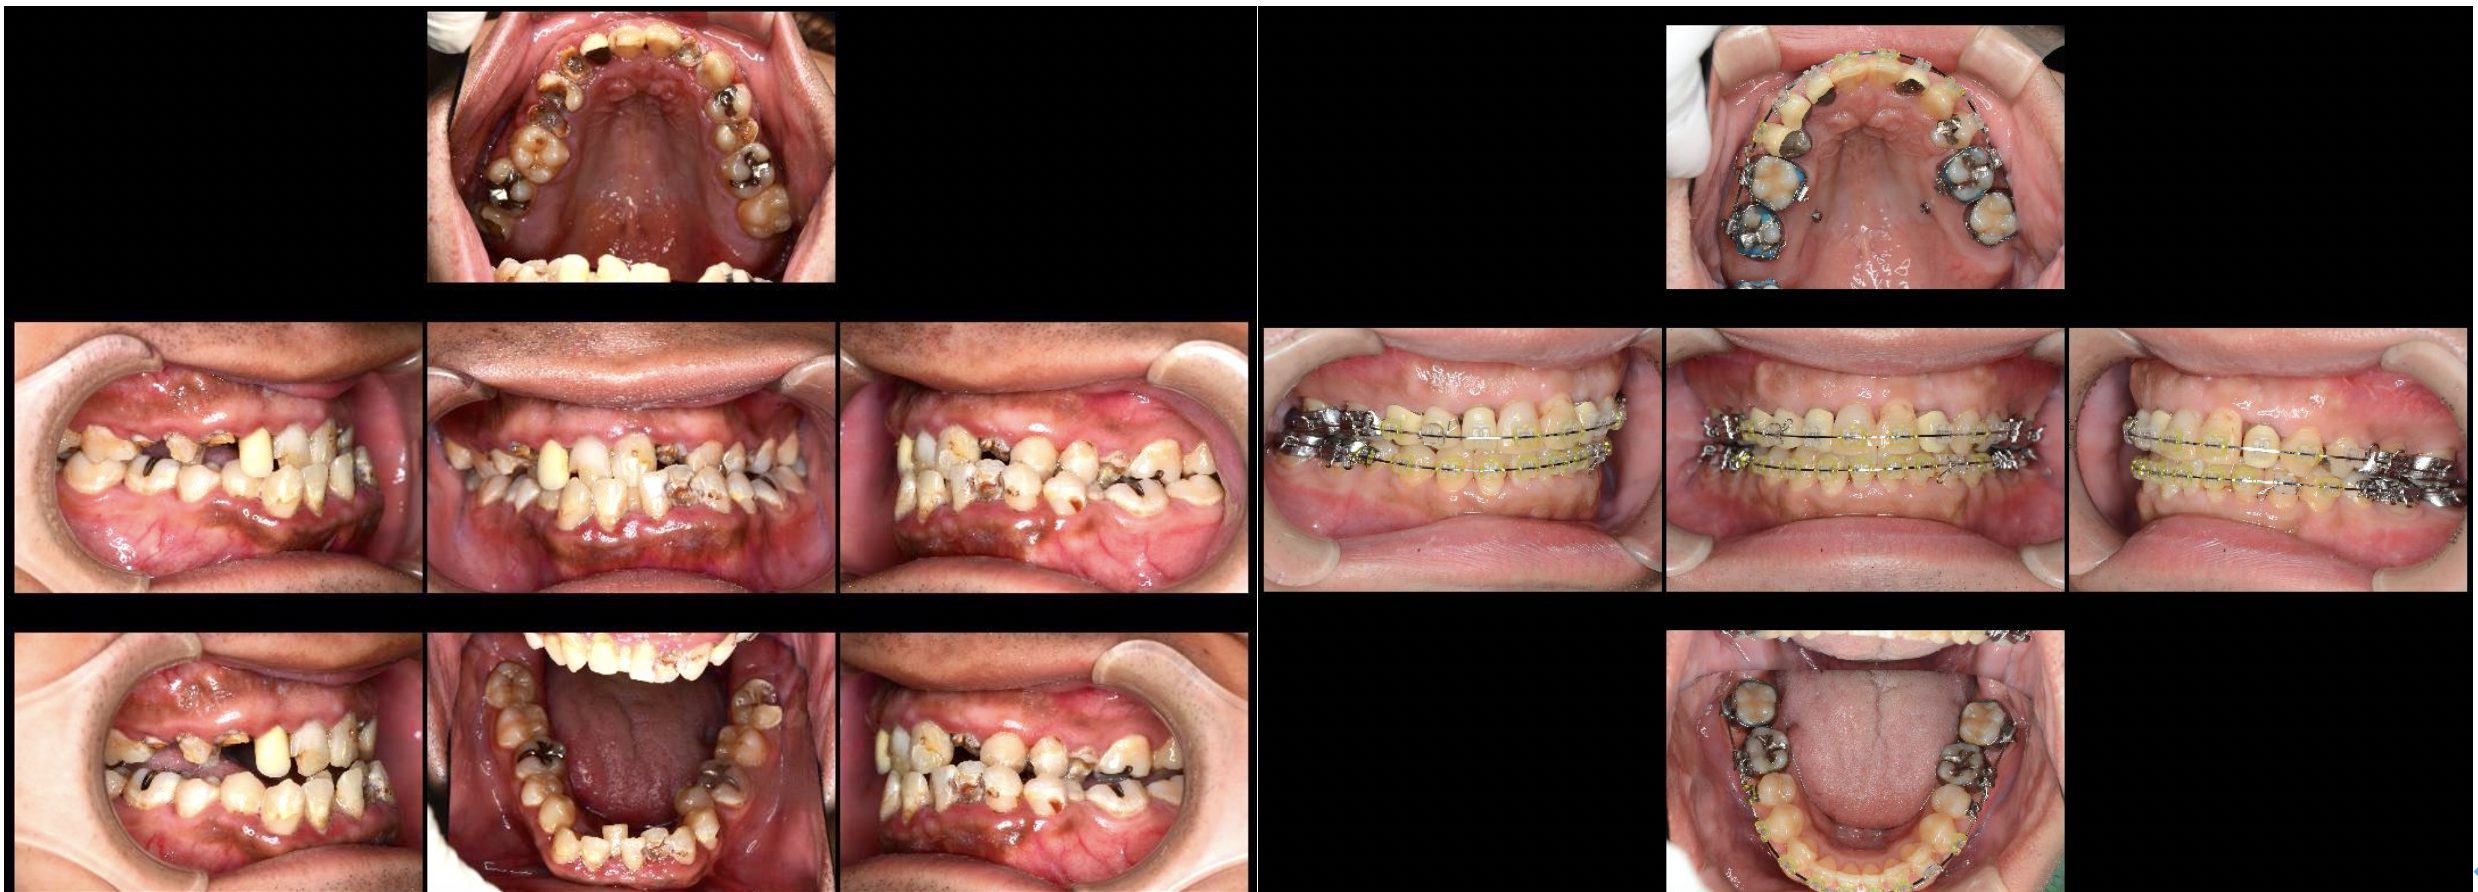 治療画像付き この虫歯はひどい状態 今後の治療の流れを解説